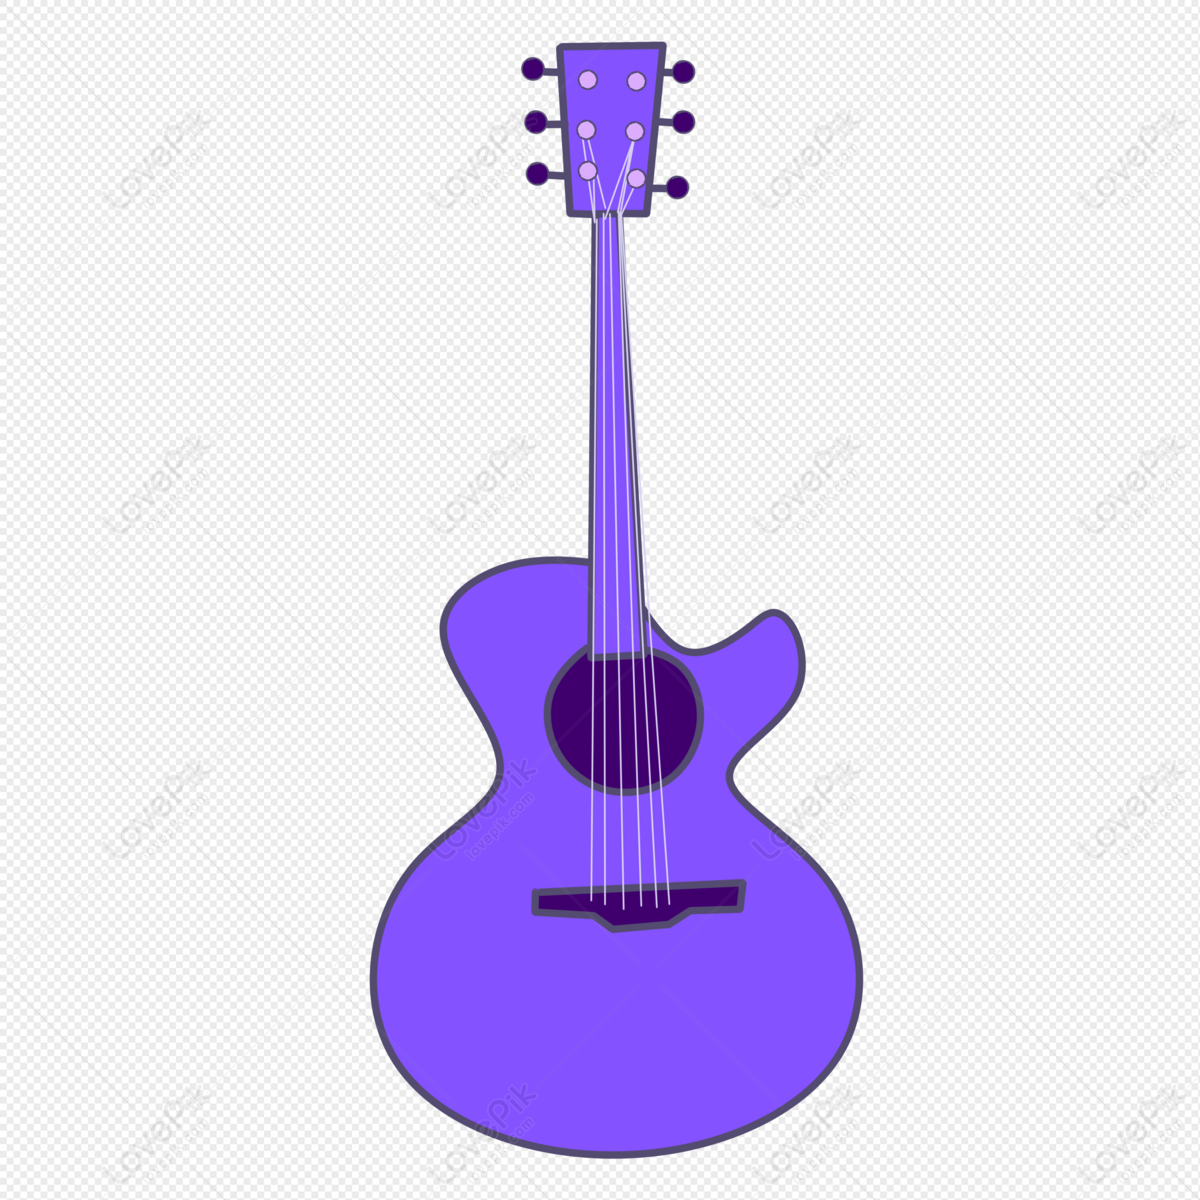 Hình ảnh Đàn Guitar Màu Tím PNG Miễn Phí Tải Về - Lovepik